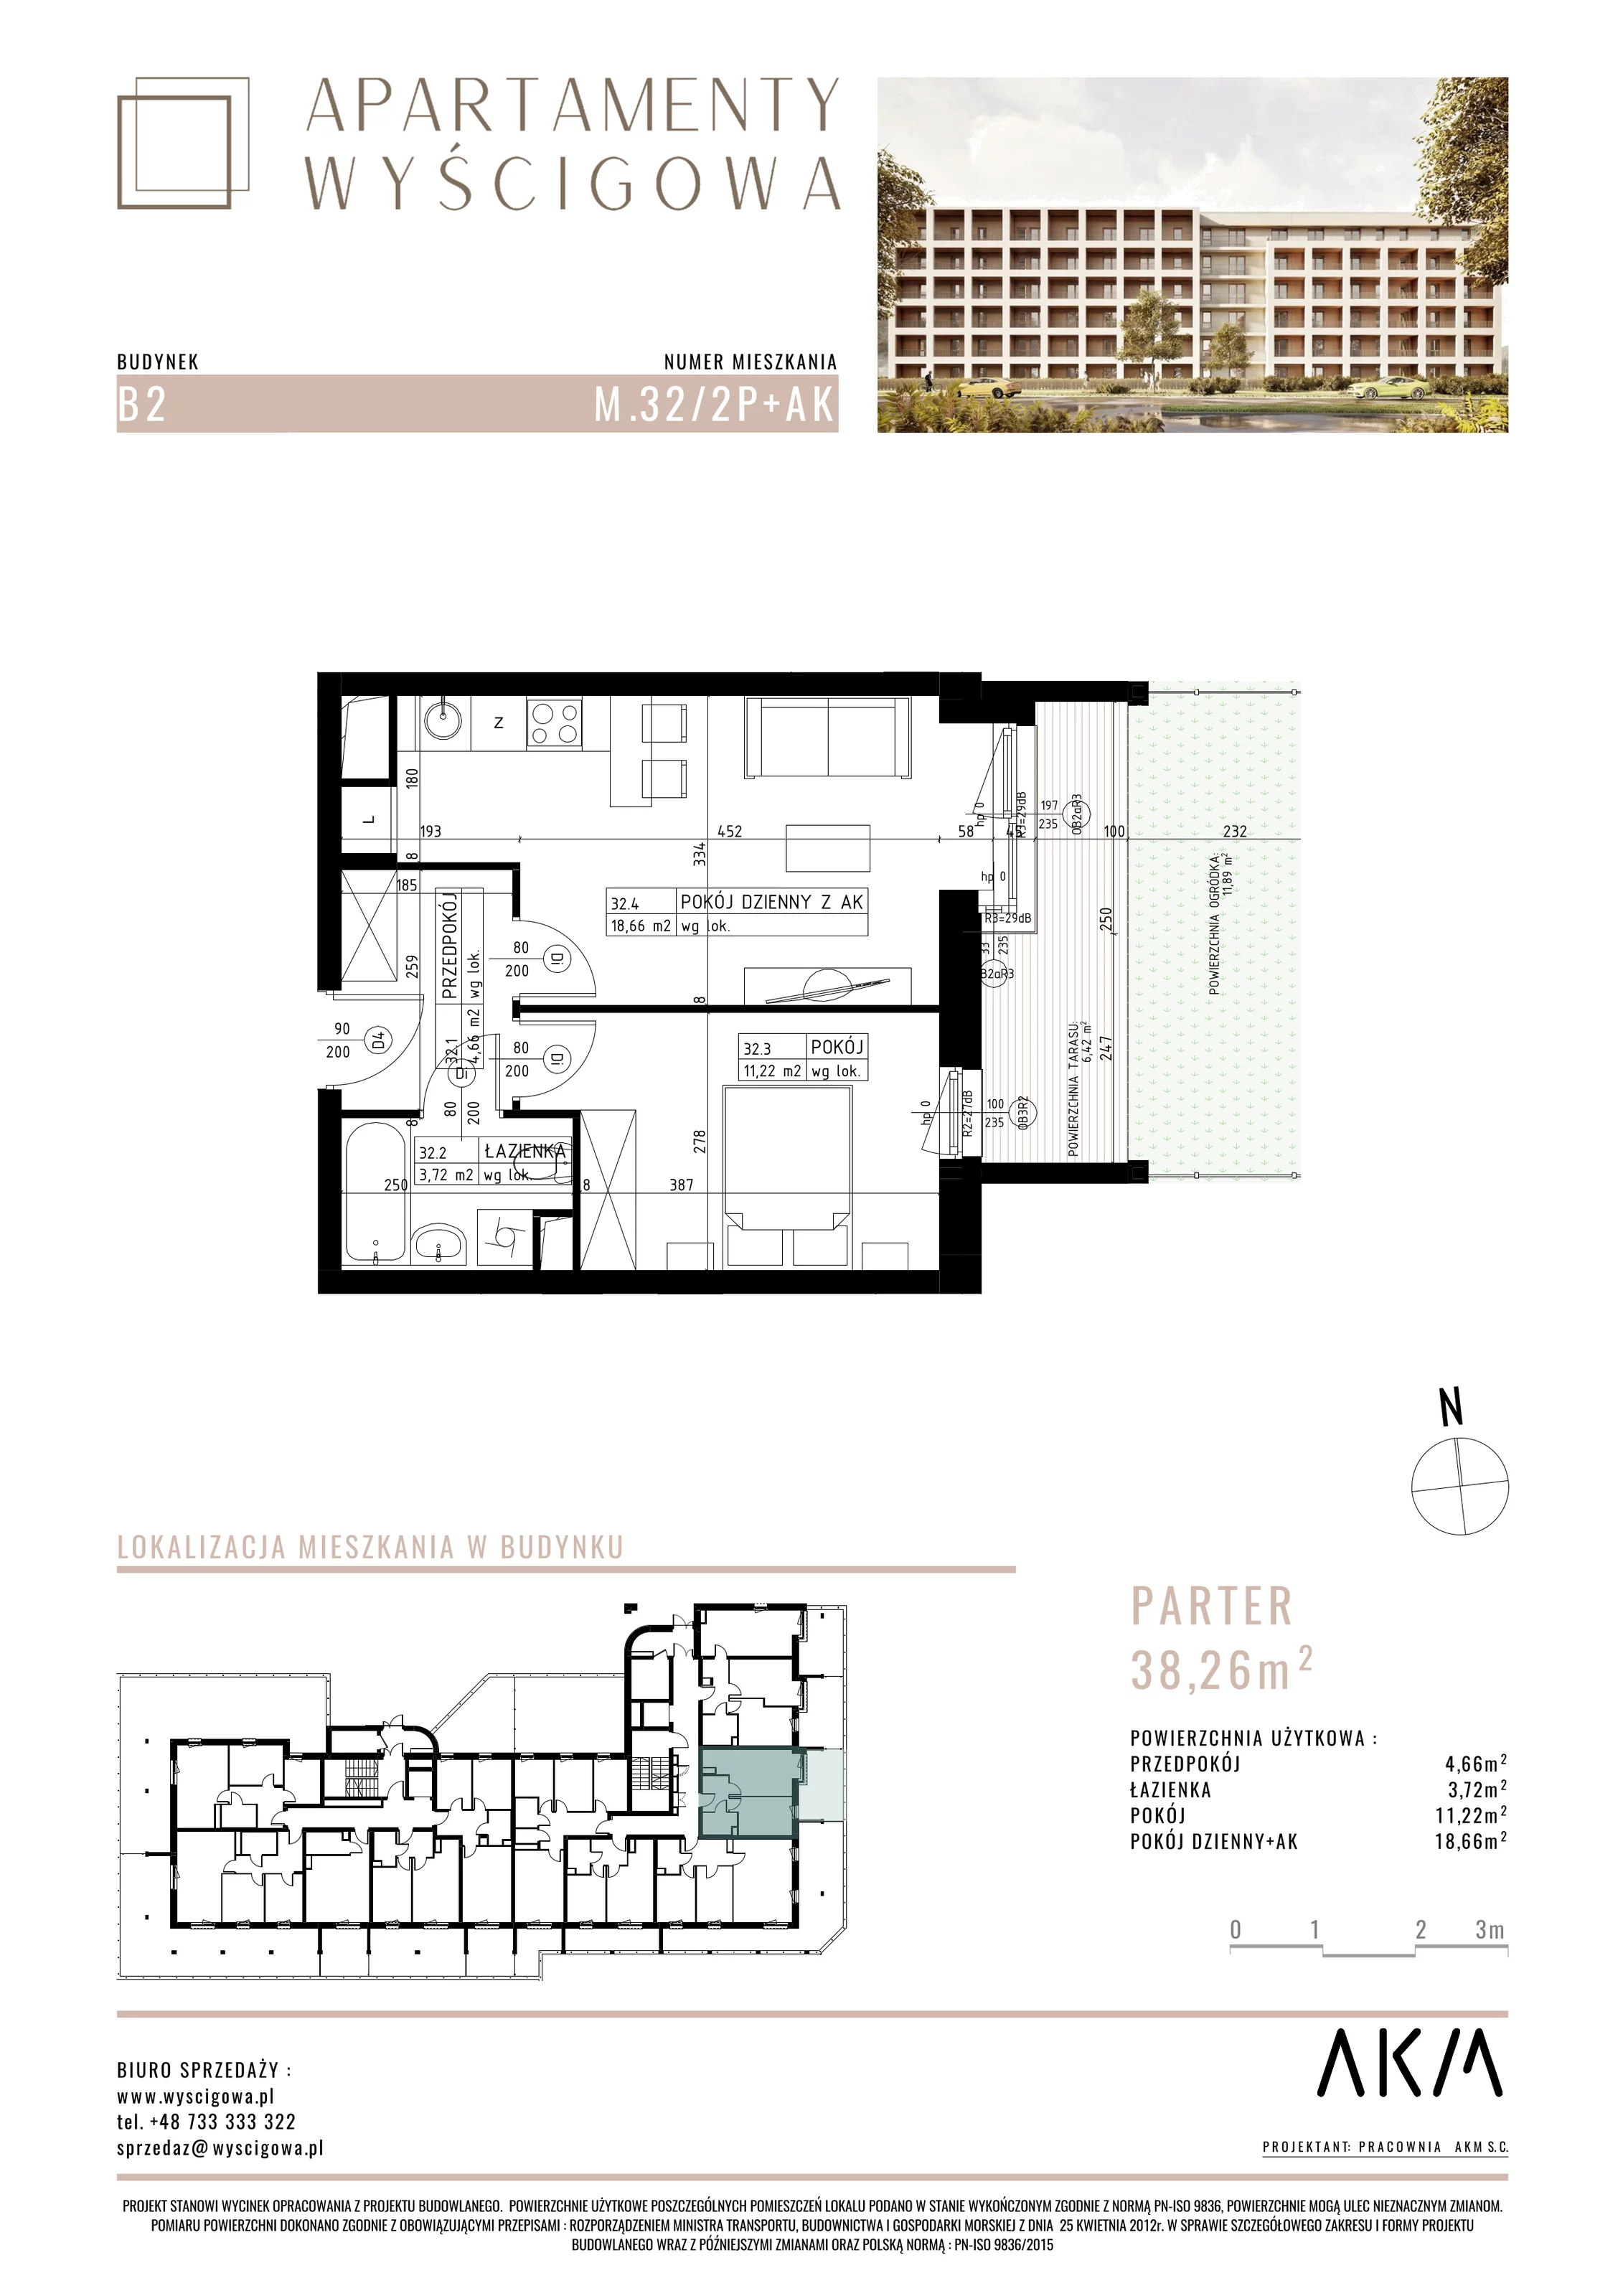 Mieszkanie 38,26 m², parter, oferta nr B2.M32, Apartamenty Wyścigowa, Lublin, Dziesiąta, Dziesiąta, ul. Wyścigowa